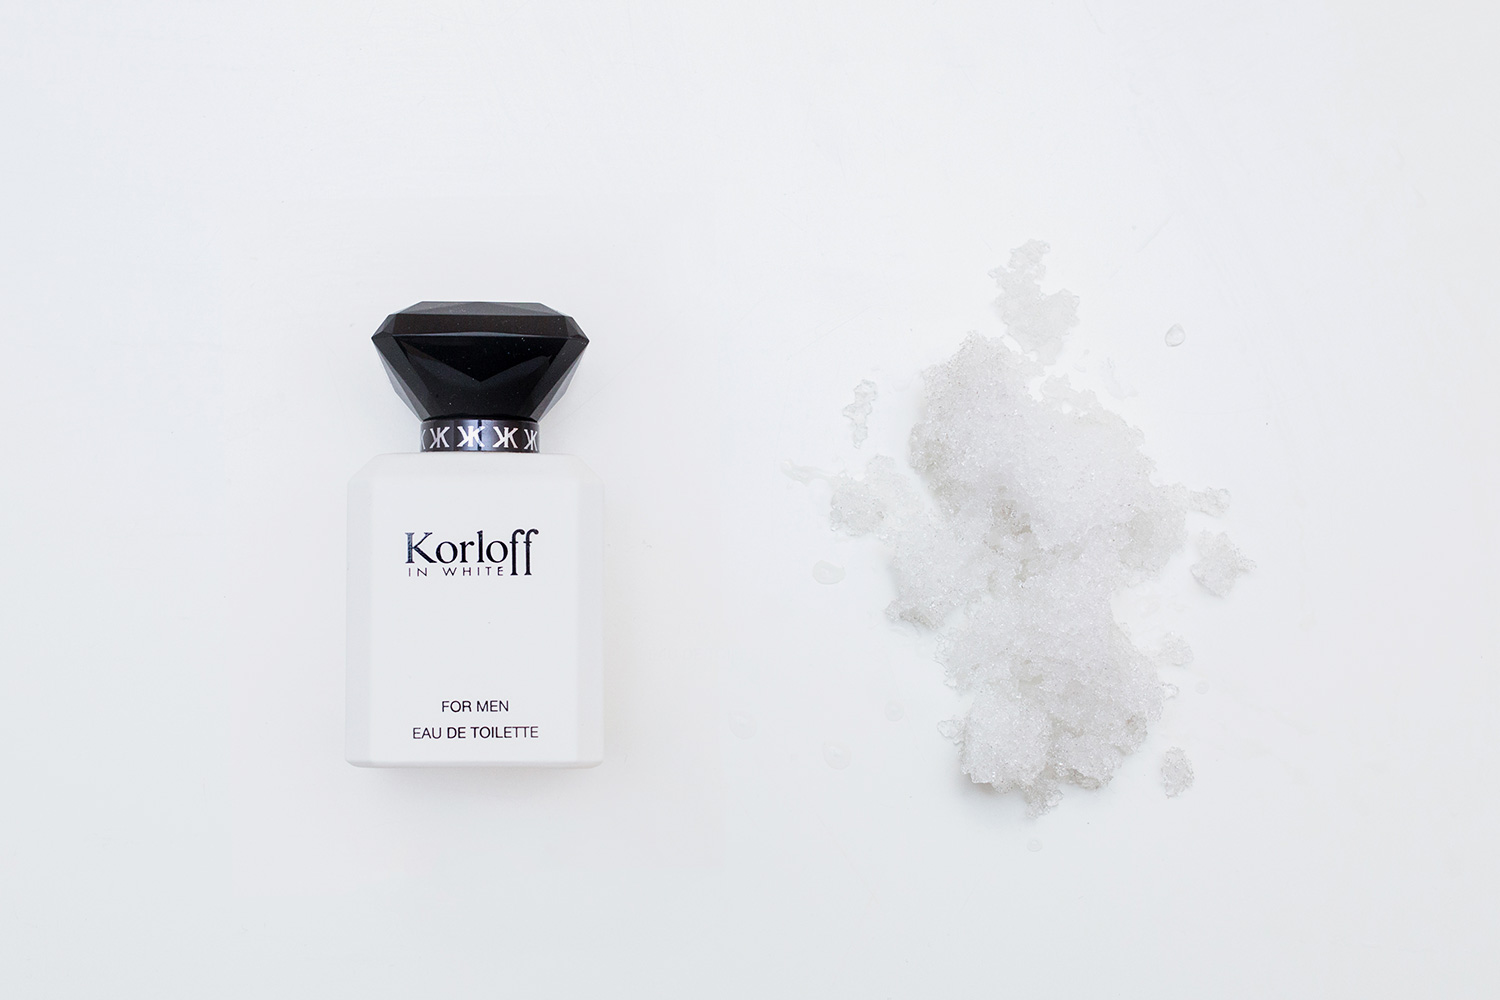 Korloff In White by Korloff Paris, 4400 р. в Articoli в ГУМе